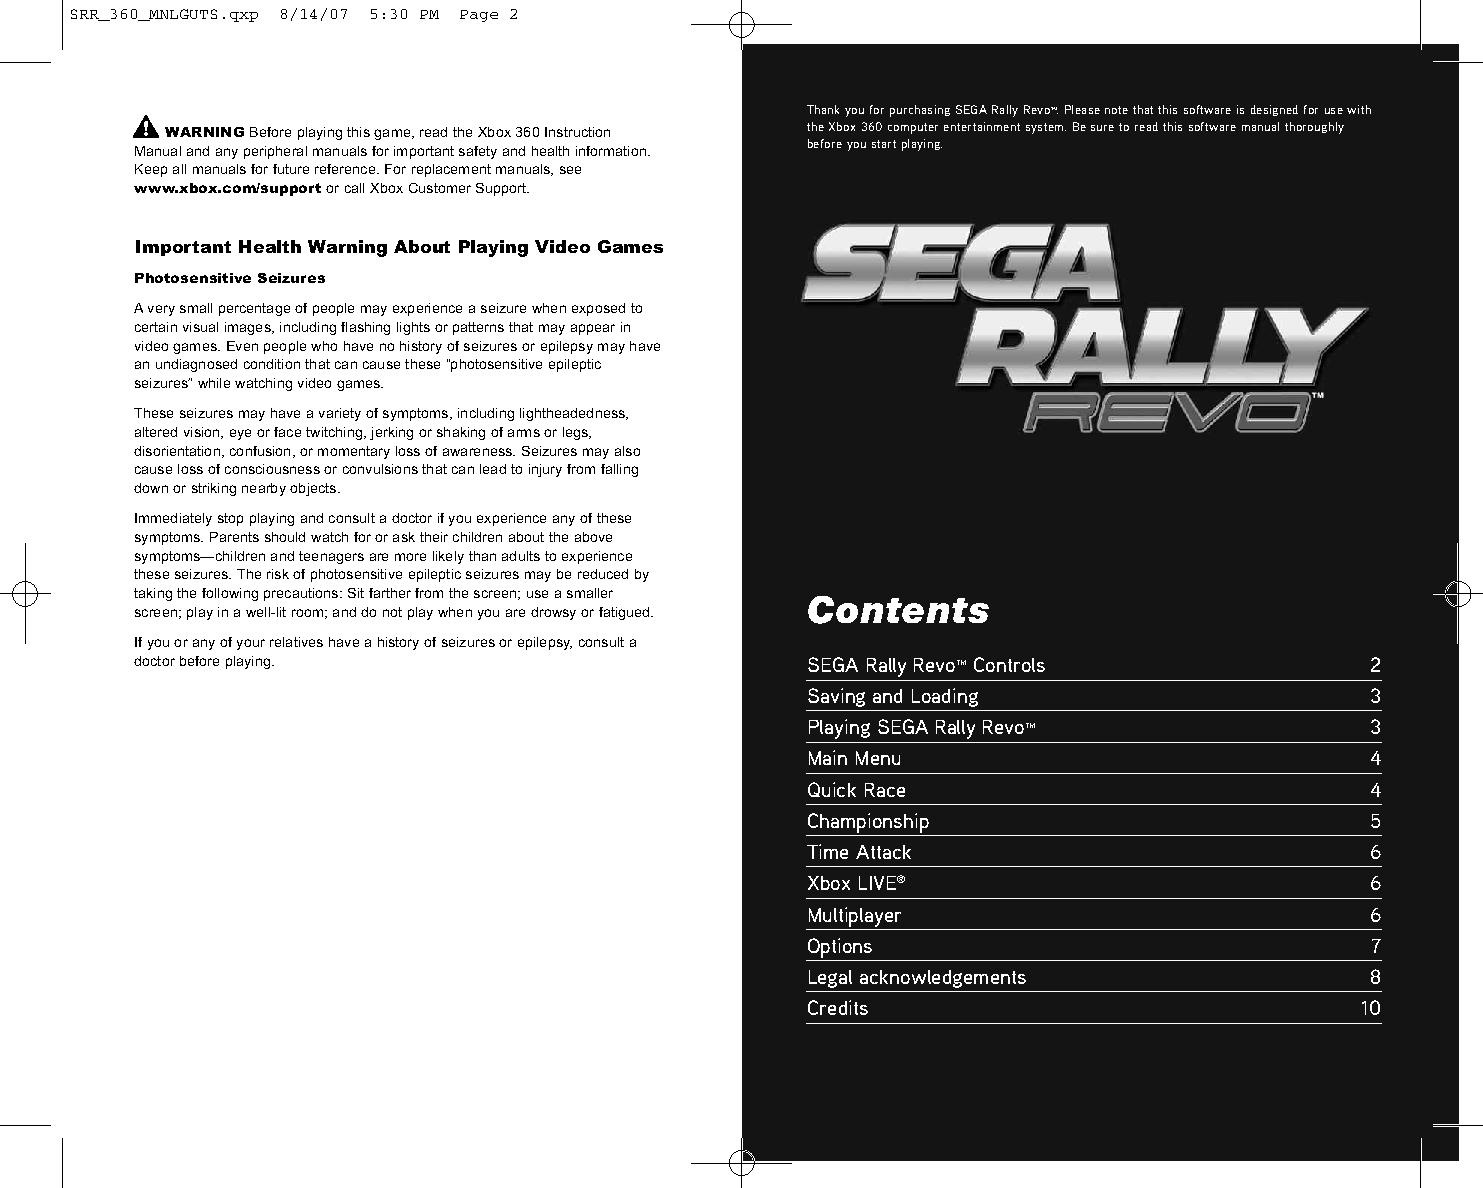 SRR 360 US digital manual.pdf